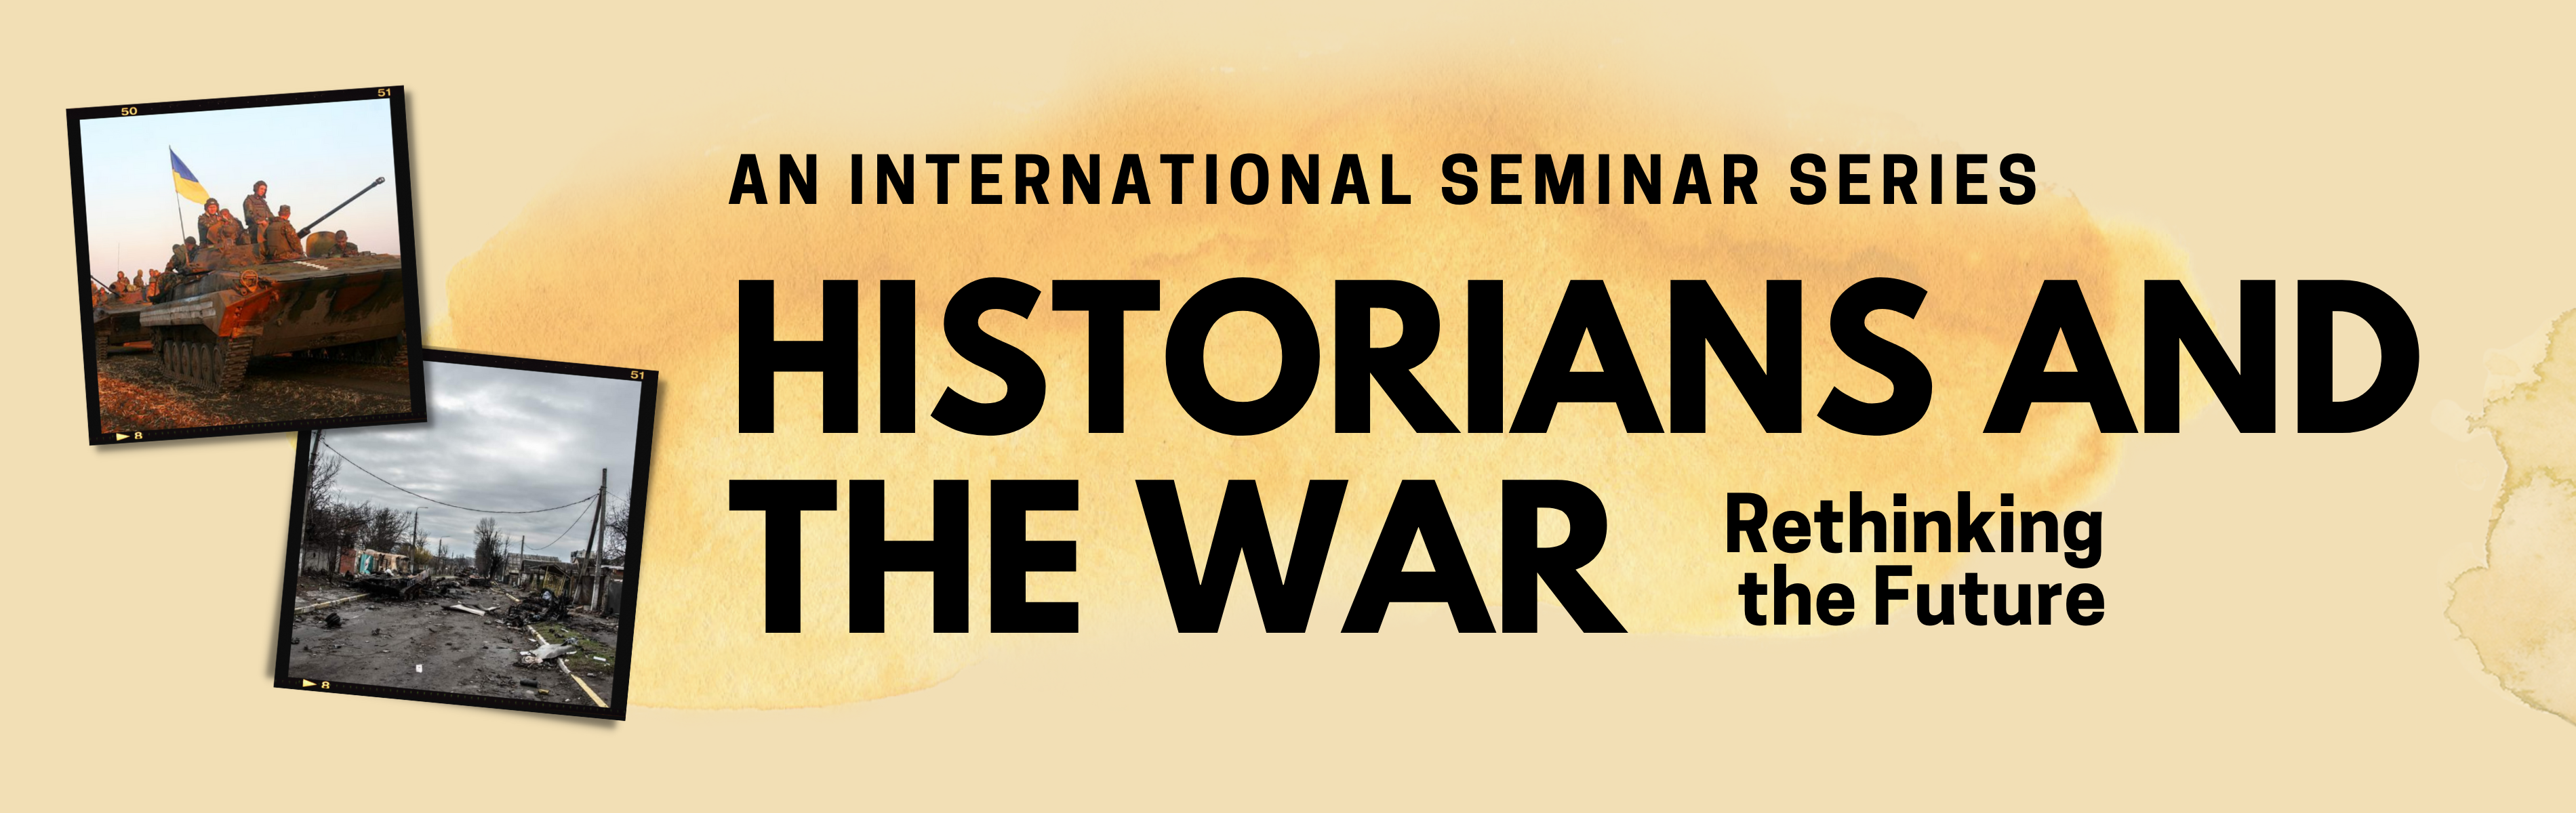 copy-2-of-historians-and-war-seminar.png